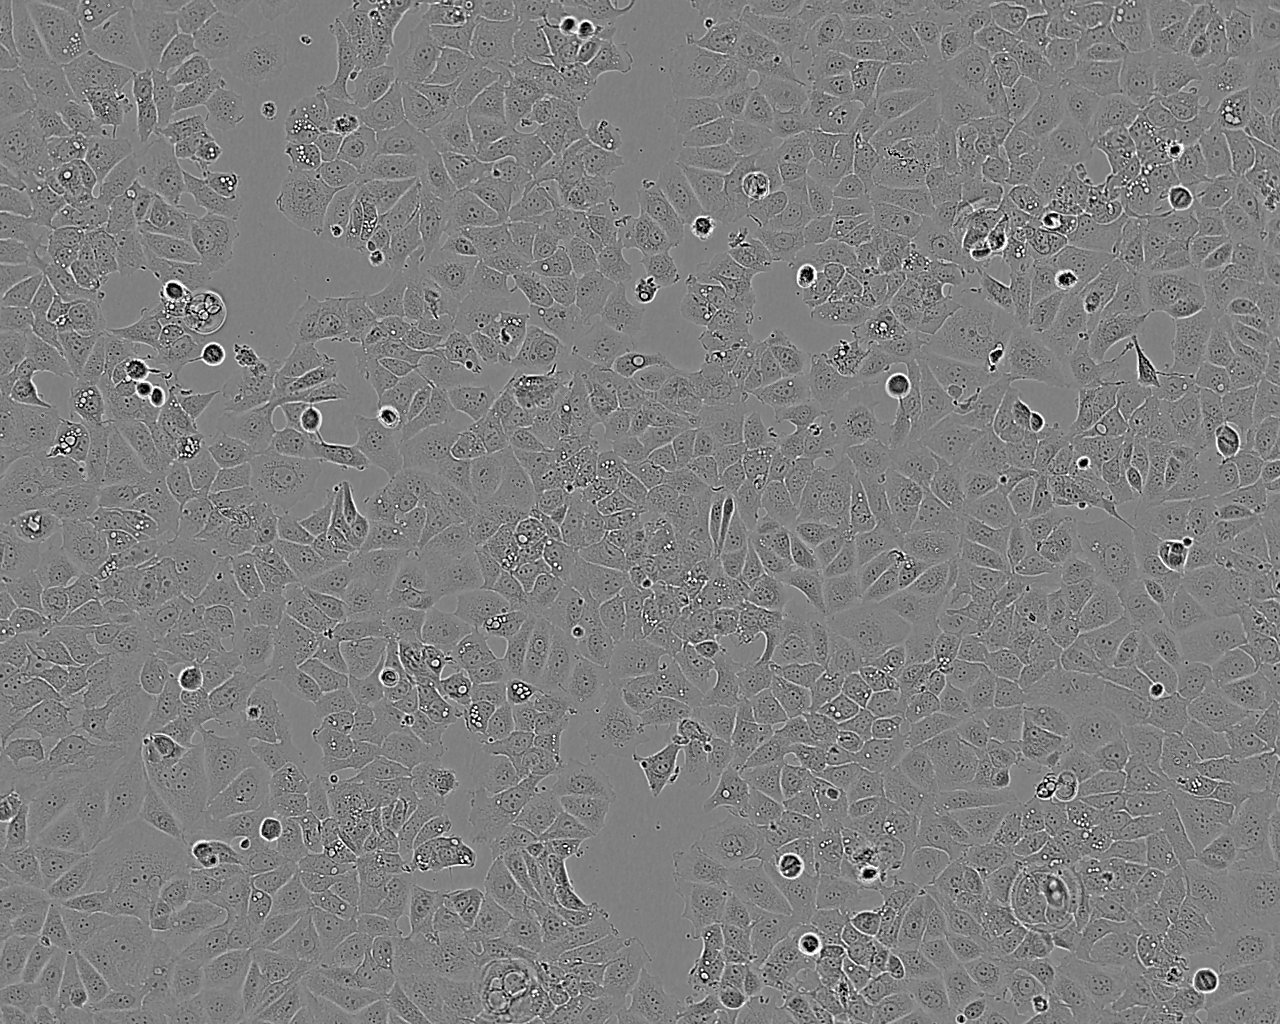 EJ-1 cell line人膀胱癌细胞系,EJ-1 cell line